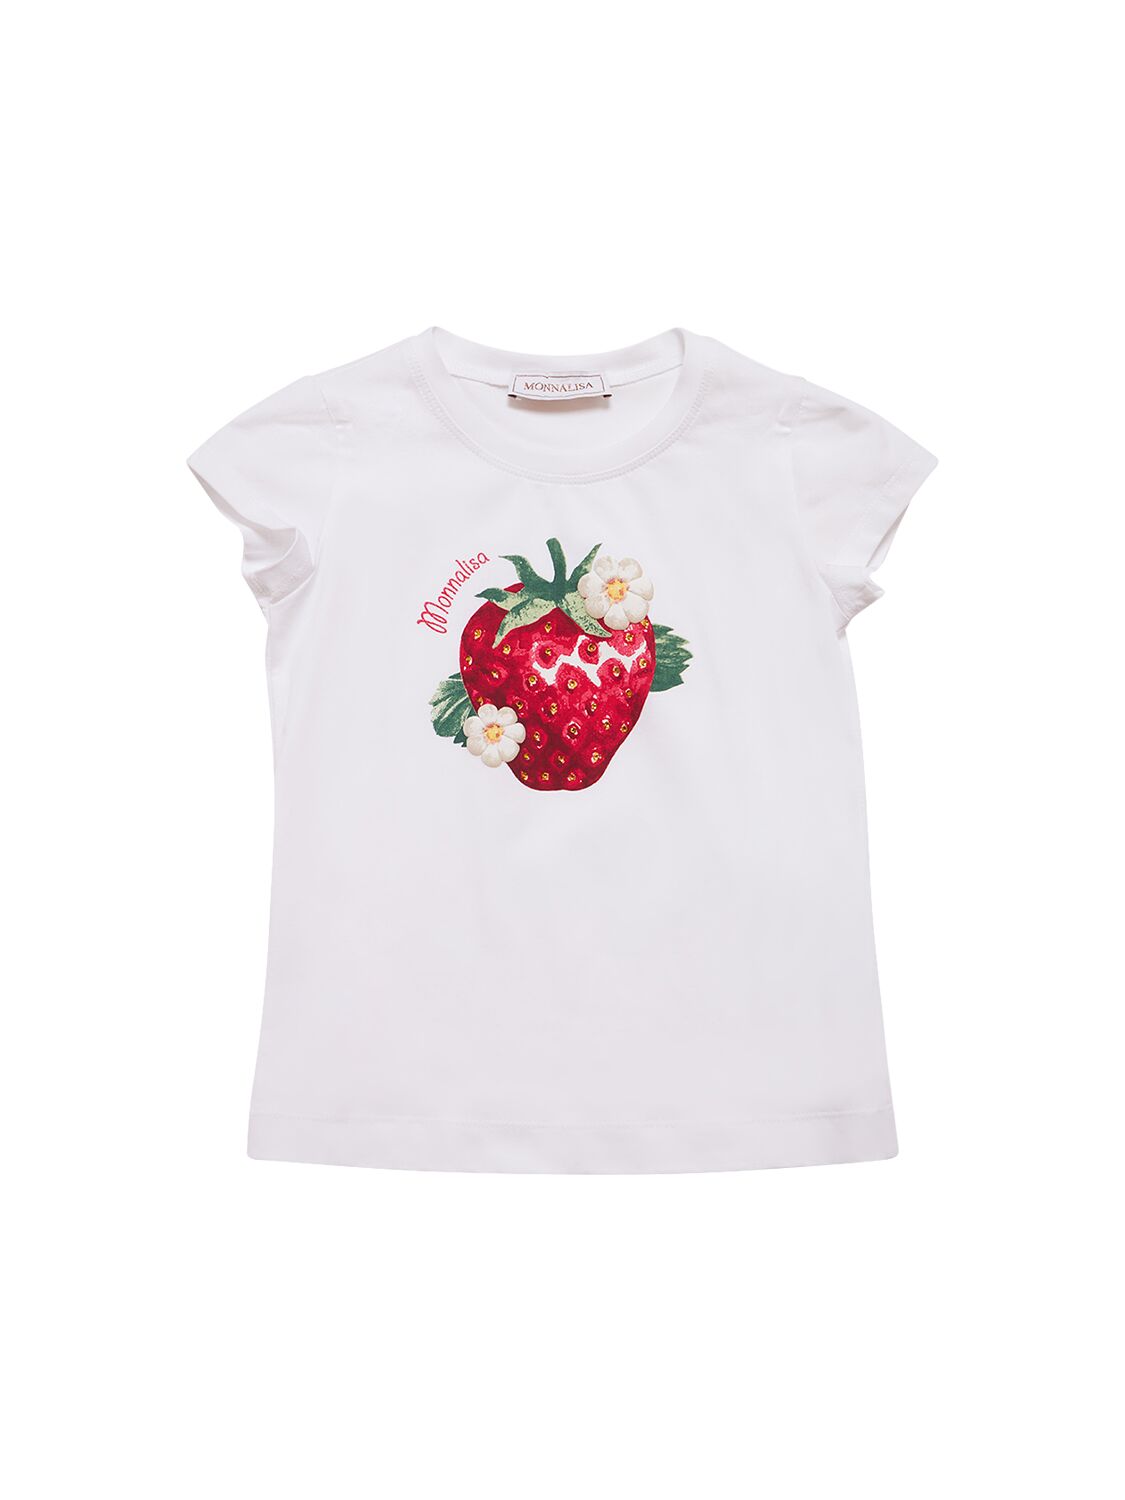 Monnalisa Kids' Printed Cotton Jersey T-shirt In White